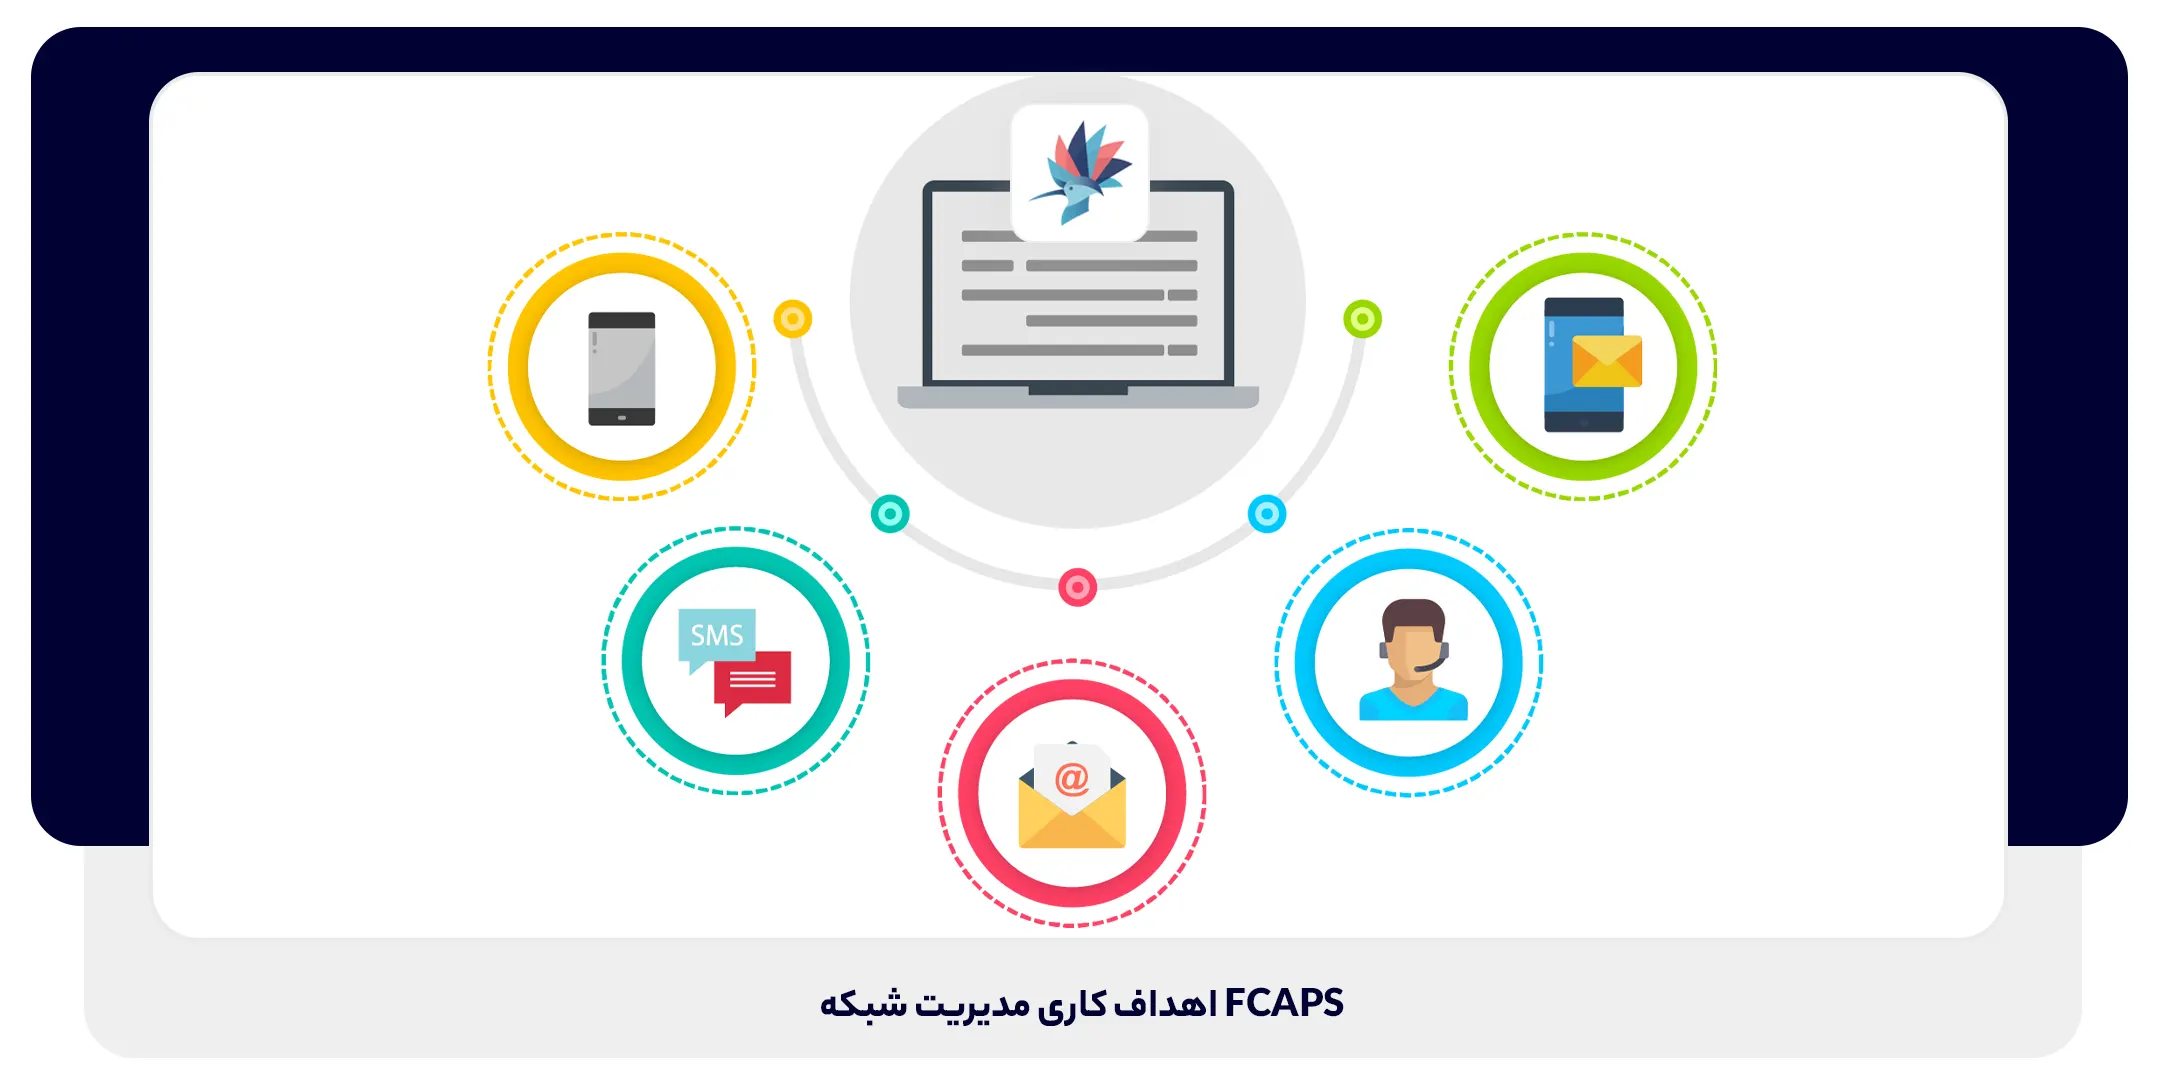 2 FCAPS اهداف کاری مدیریت شبکه | داناپرداز